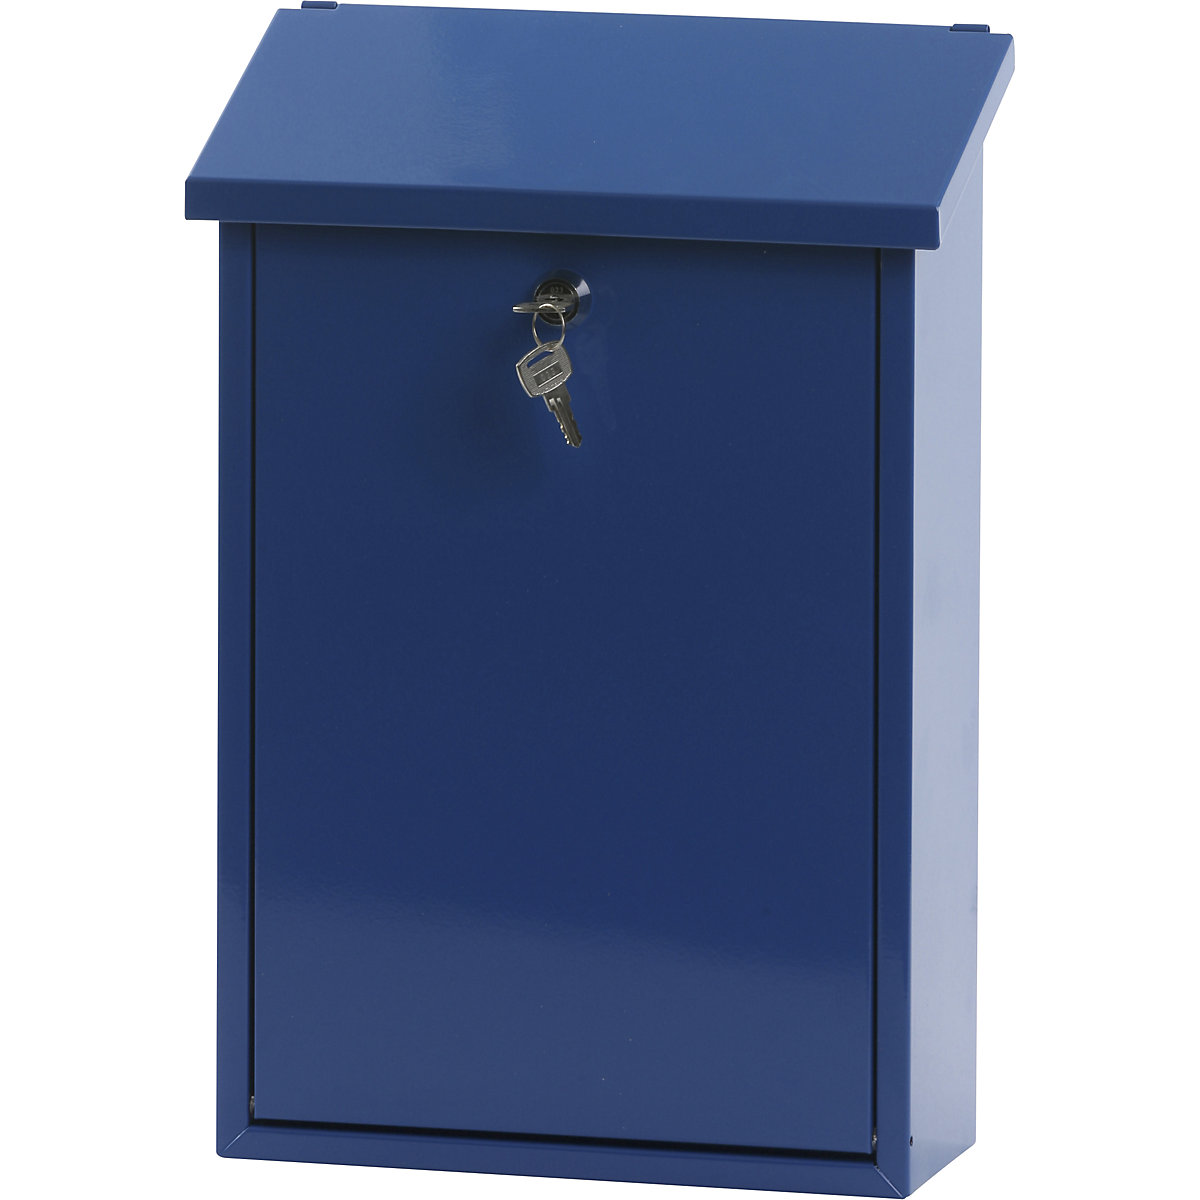 Standard-Briefkasten, Stahlblech, pulverbeschichtet, blau RAL 5005-5